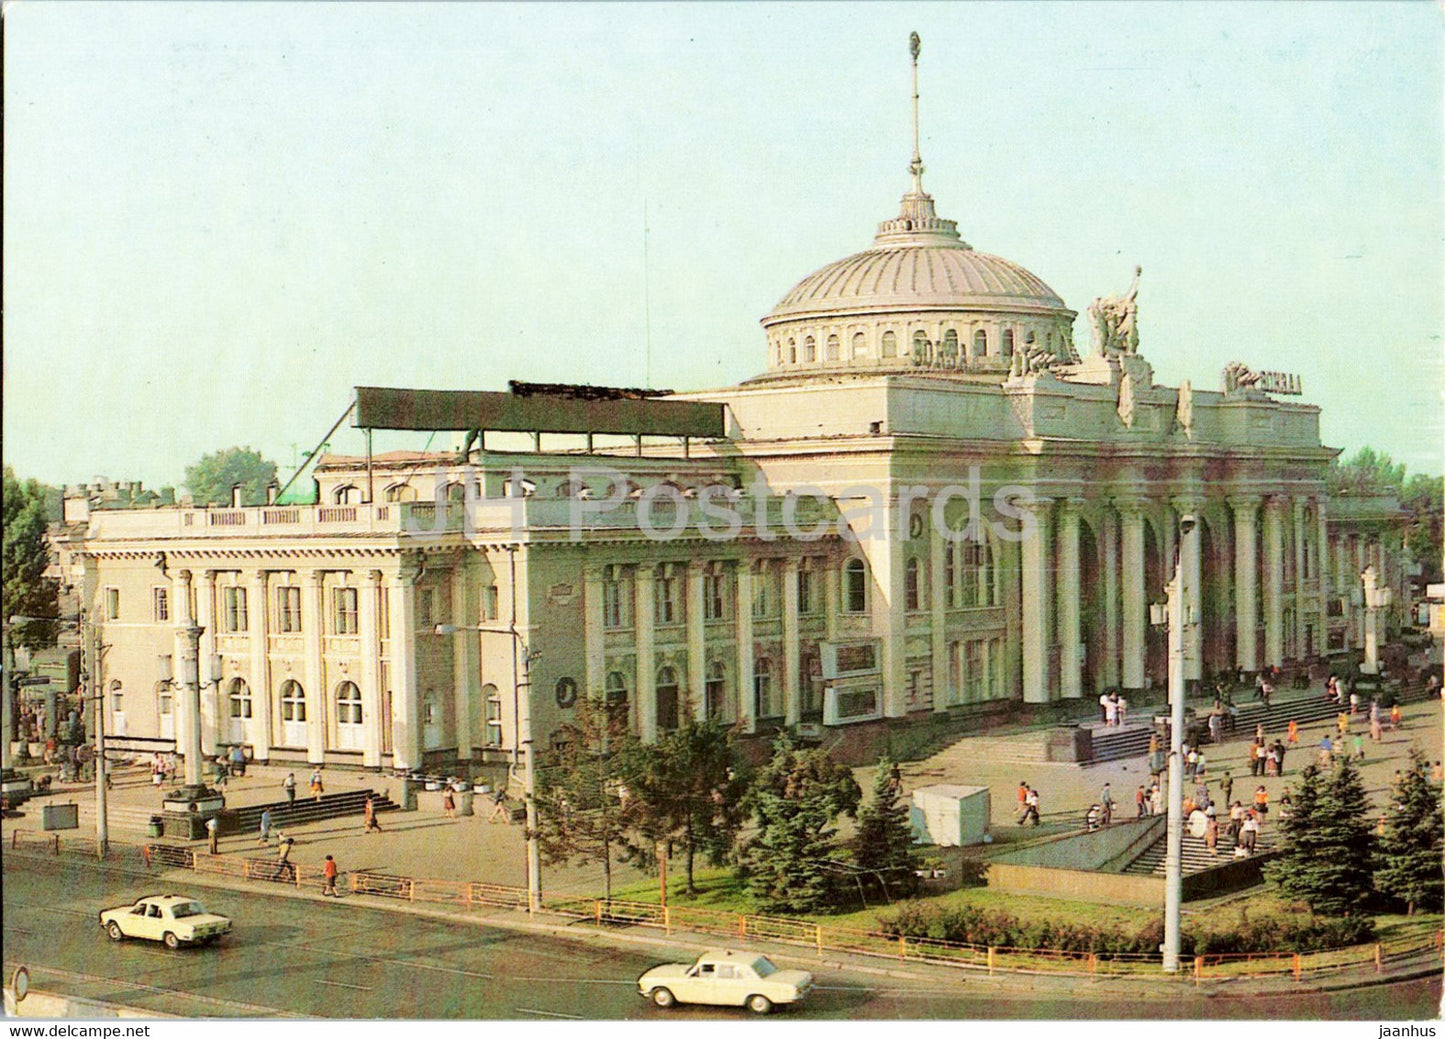 Odessa - Railway Station - postal stationery - 1983 - Ukraine USSR - unused - JH Postcards